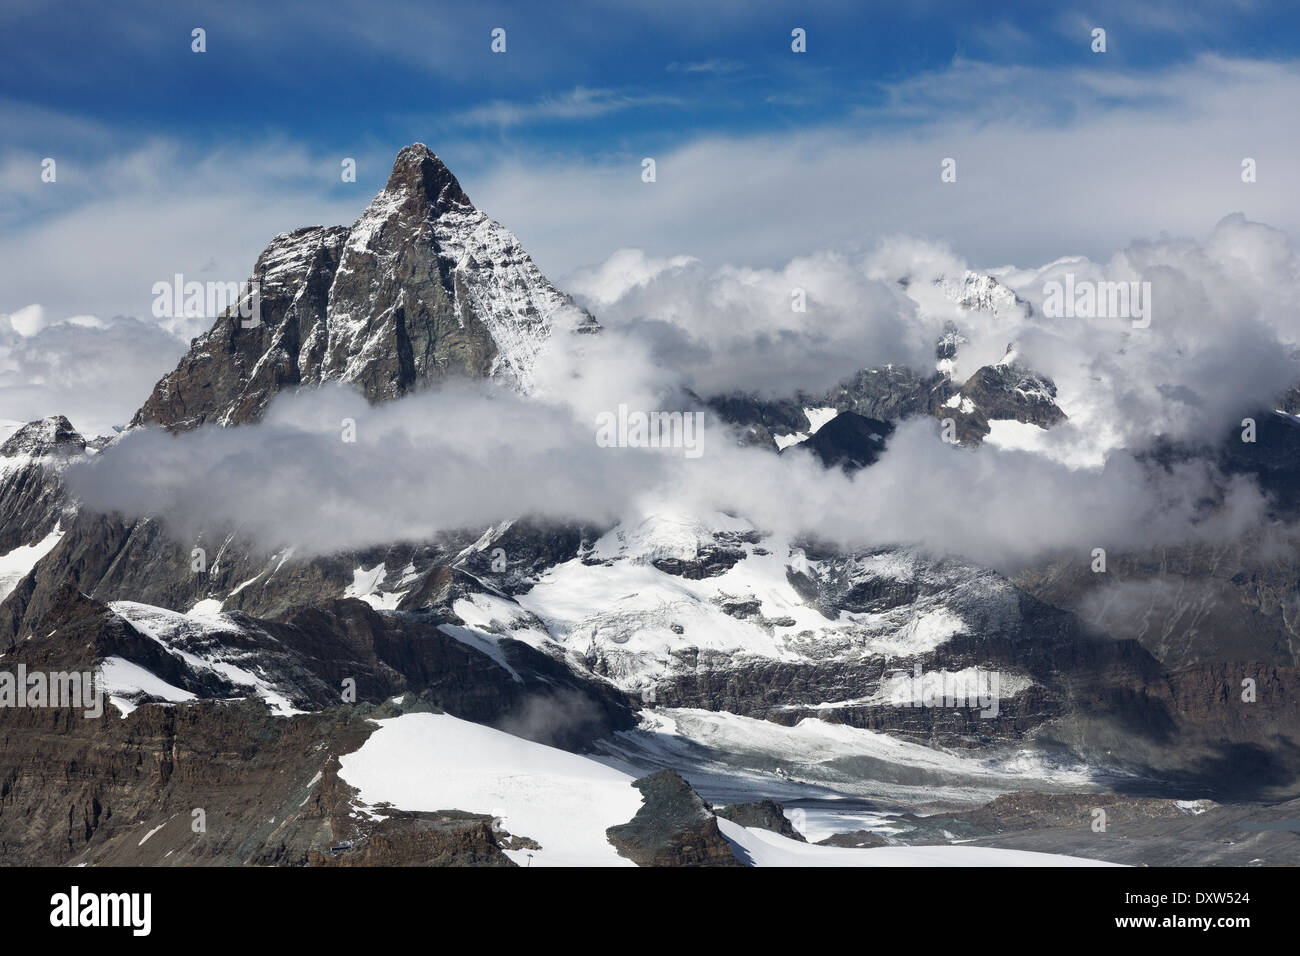 Ciel bleu et nuages bas vue du Matterhorn Glacier Paradise de pointe dans les Alpes suisses, près de la ville de Zermatt Banque D'Images